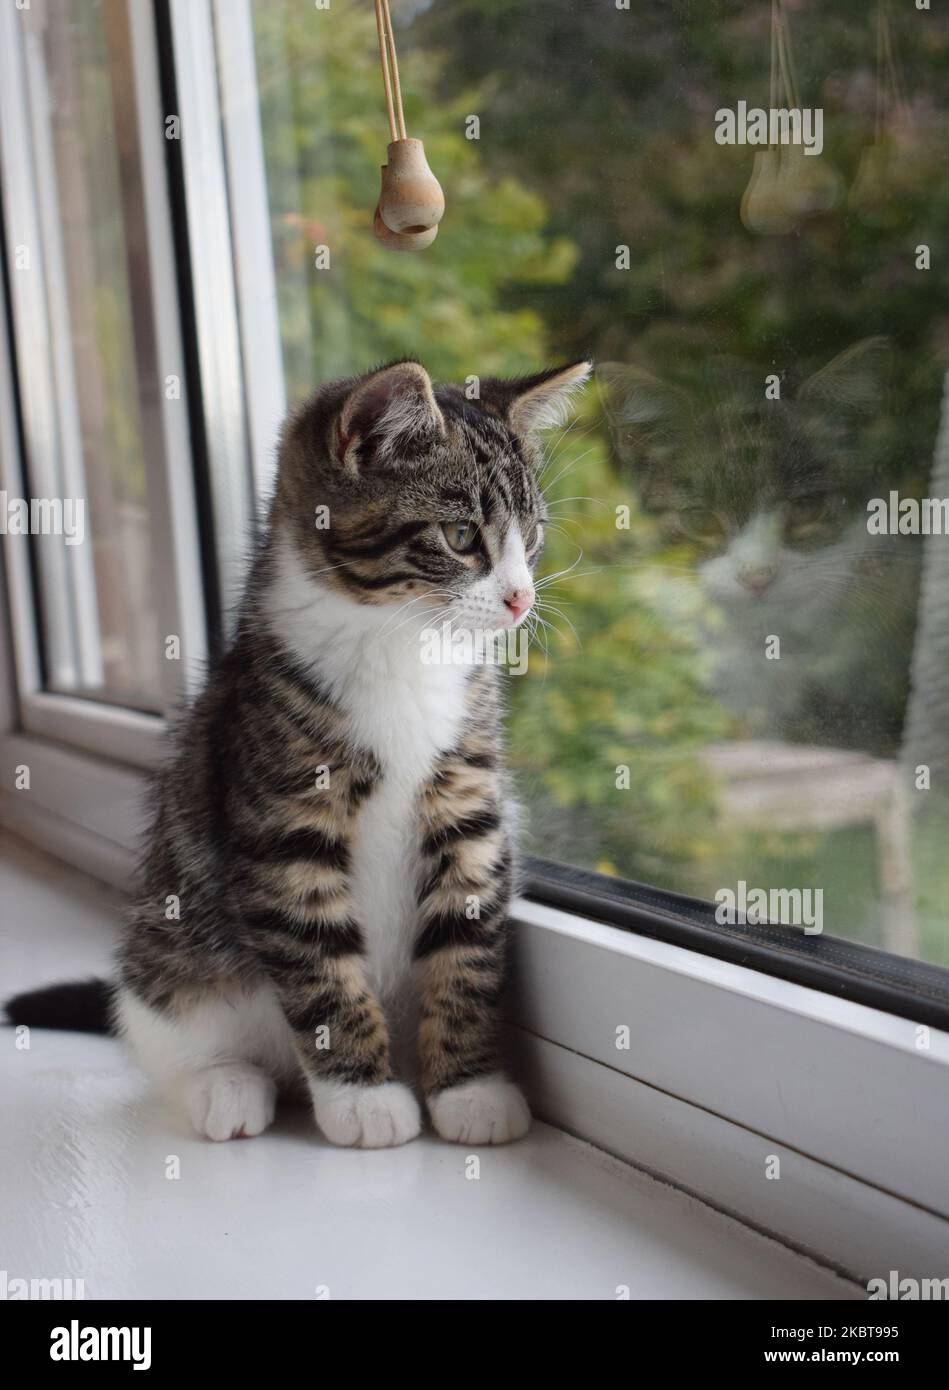 Ein 12 Wochen alter männlicher Mischstamm aus gebräuchlichem, braunem Hauskätzchen und weißem Kätzchen, das auf einer Fensterbank sitzt und seine Abstoßung im Fenster sichtbar ist Stockfoto